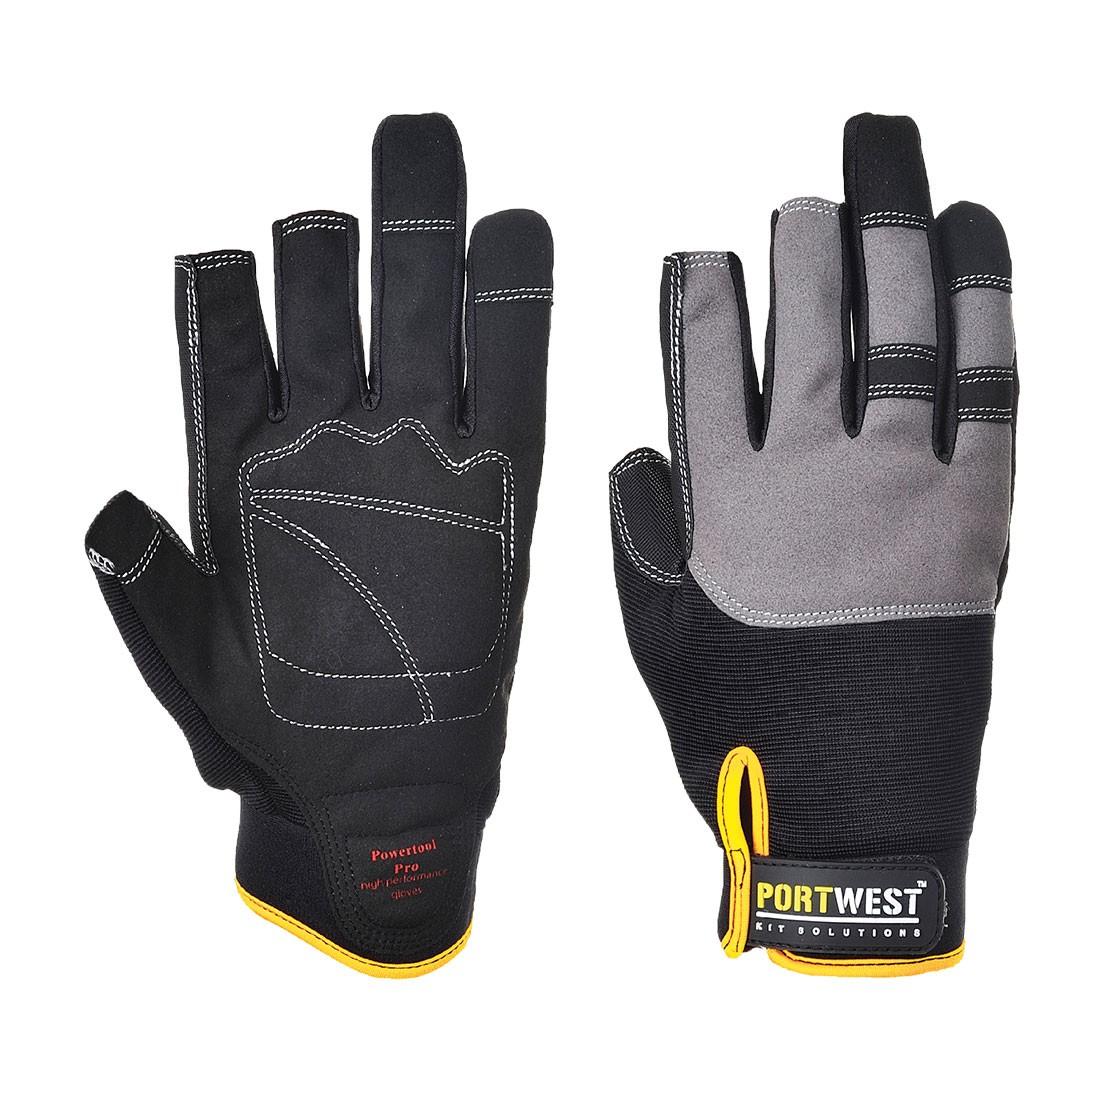 A740 Powertool High Performance Gloves